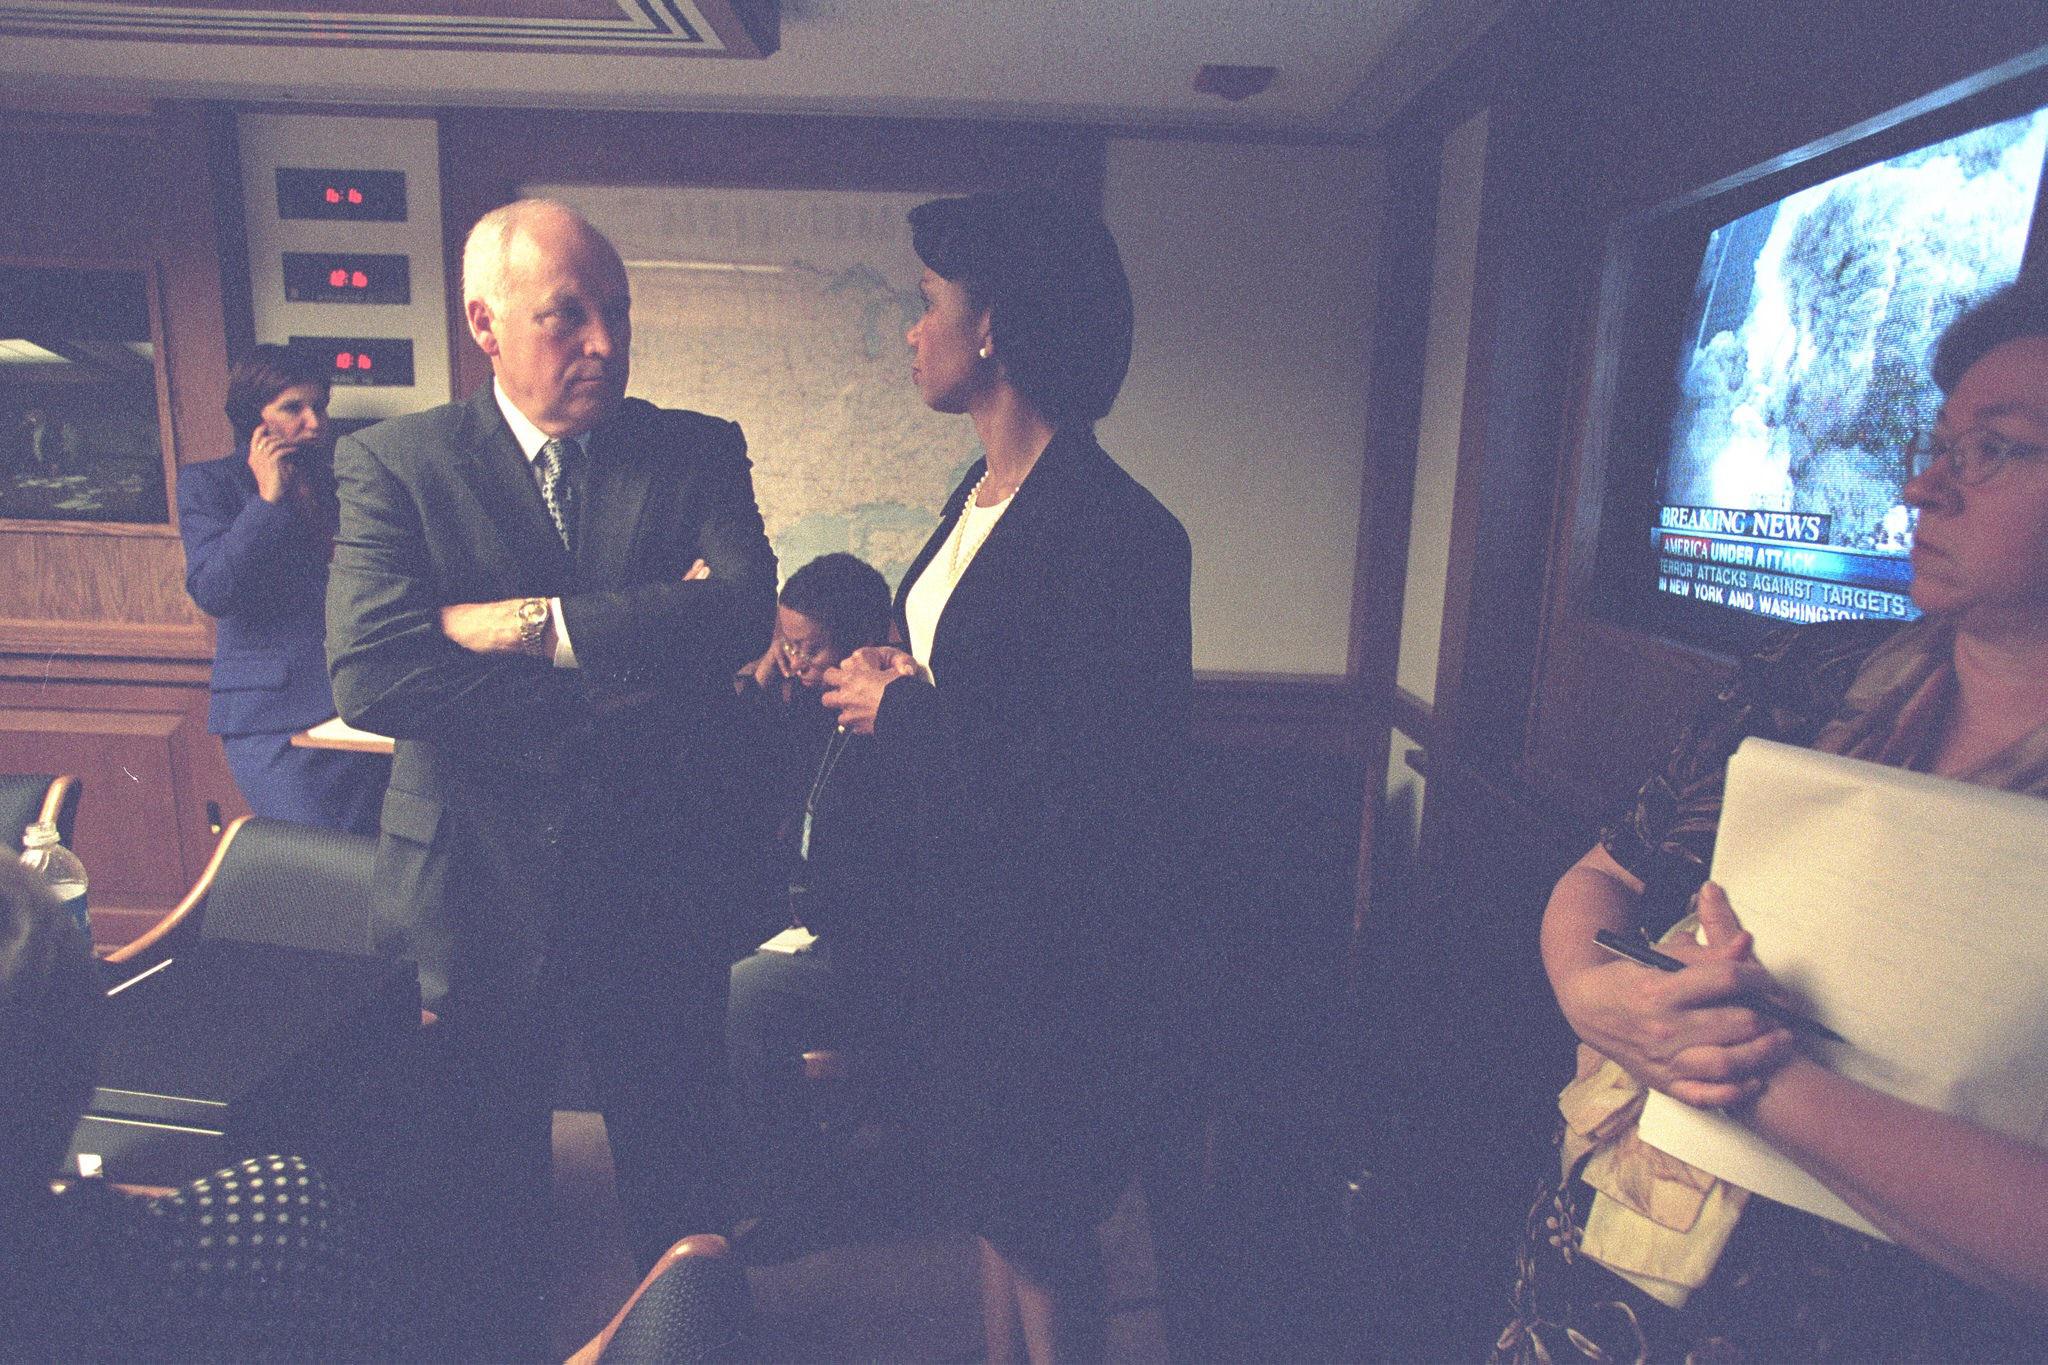 Lo shock, l’orrore e la tensione per gli attacchi terroristici dell’11 settembre 2001 sui volti del presidente George Bush, del vicepresidente Dick Cheney e del consigliere della sicurezza nazionale Condoleezza Rice. (Flickr/US National Archives)